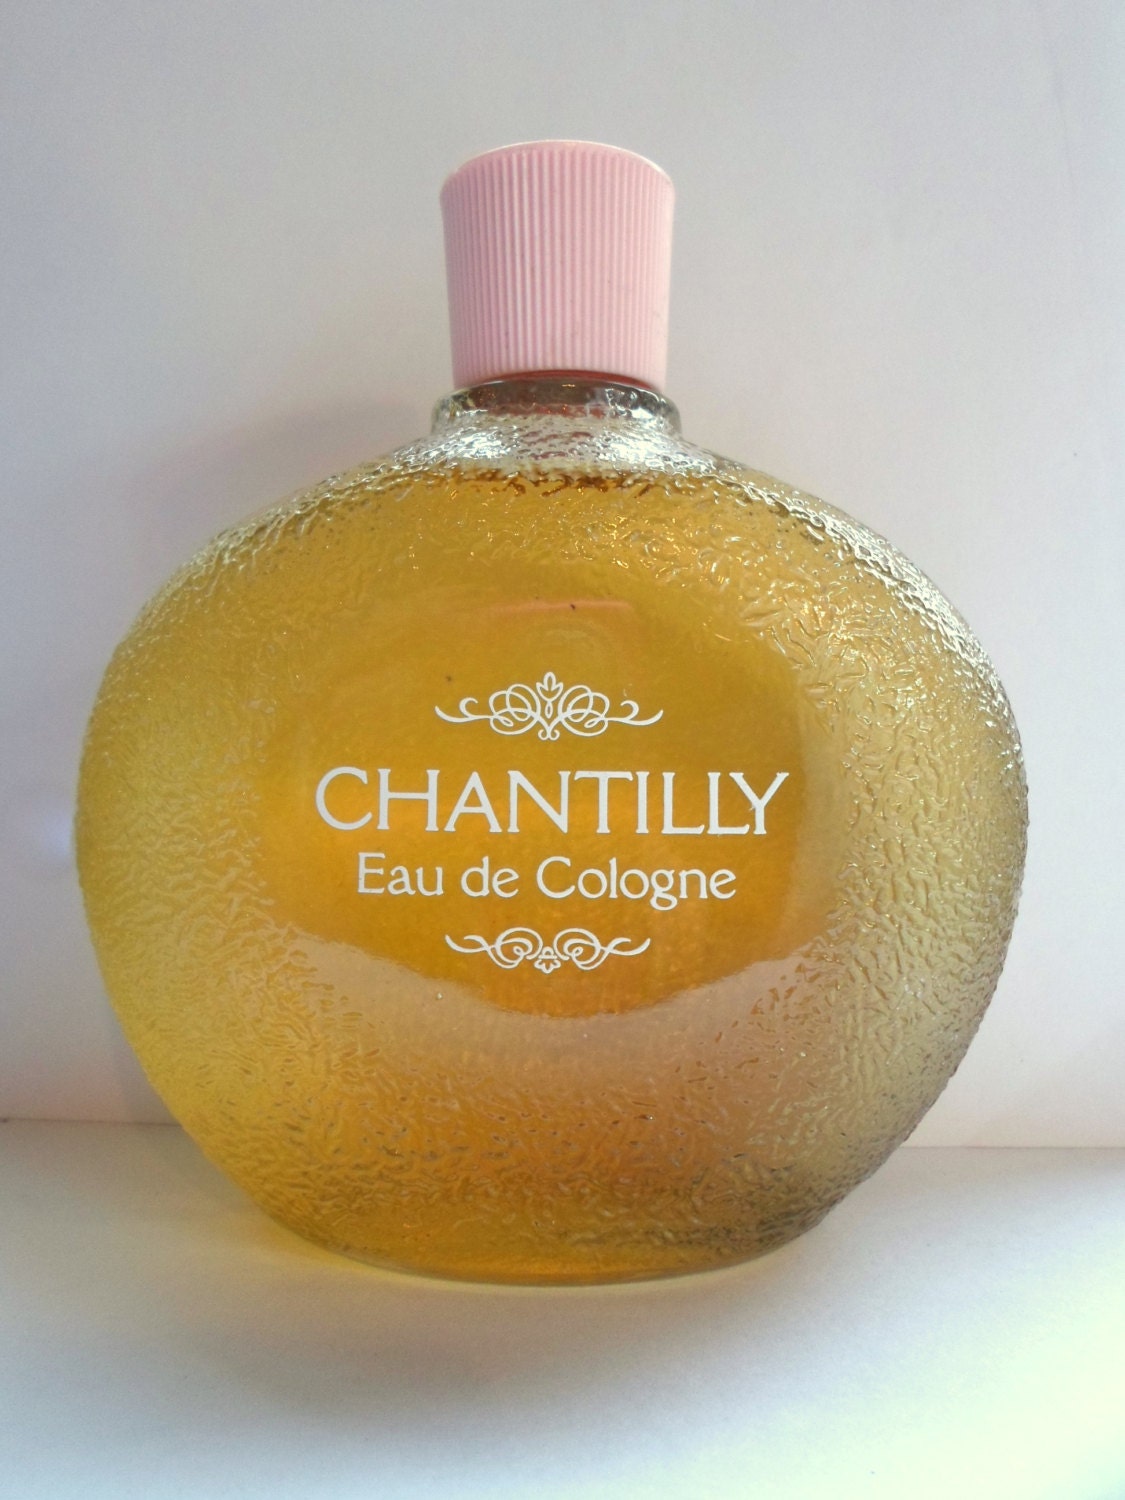 Original Houbigant Chantilly Eau de Cologne by LaurelMountainShop